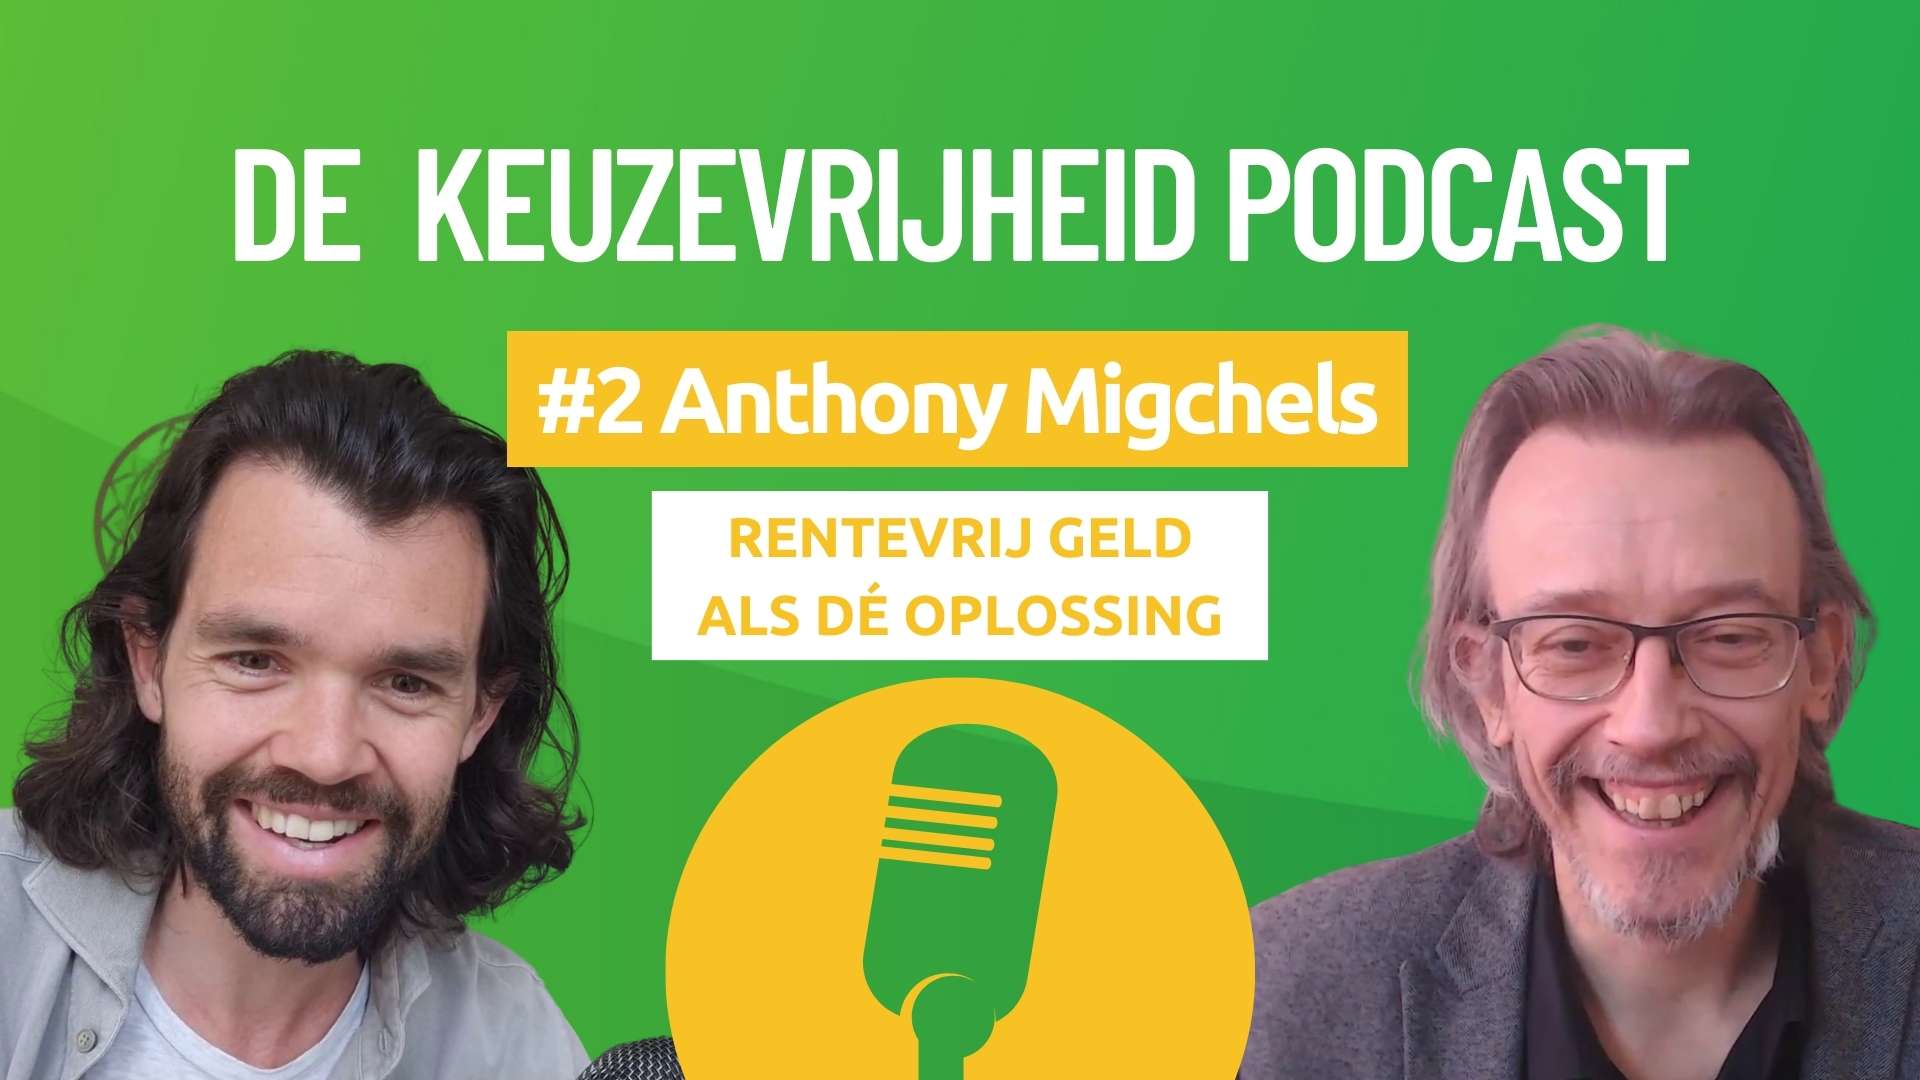 De Keuzevrijheid Podcast #2 Anthony Migchels - Rentevrij geld als dé oplossing